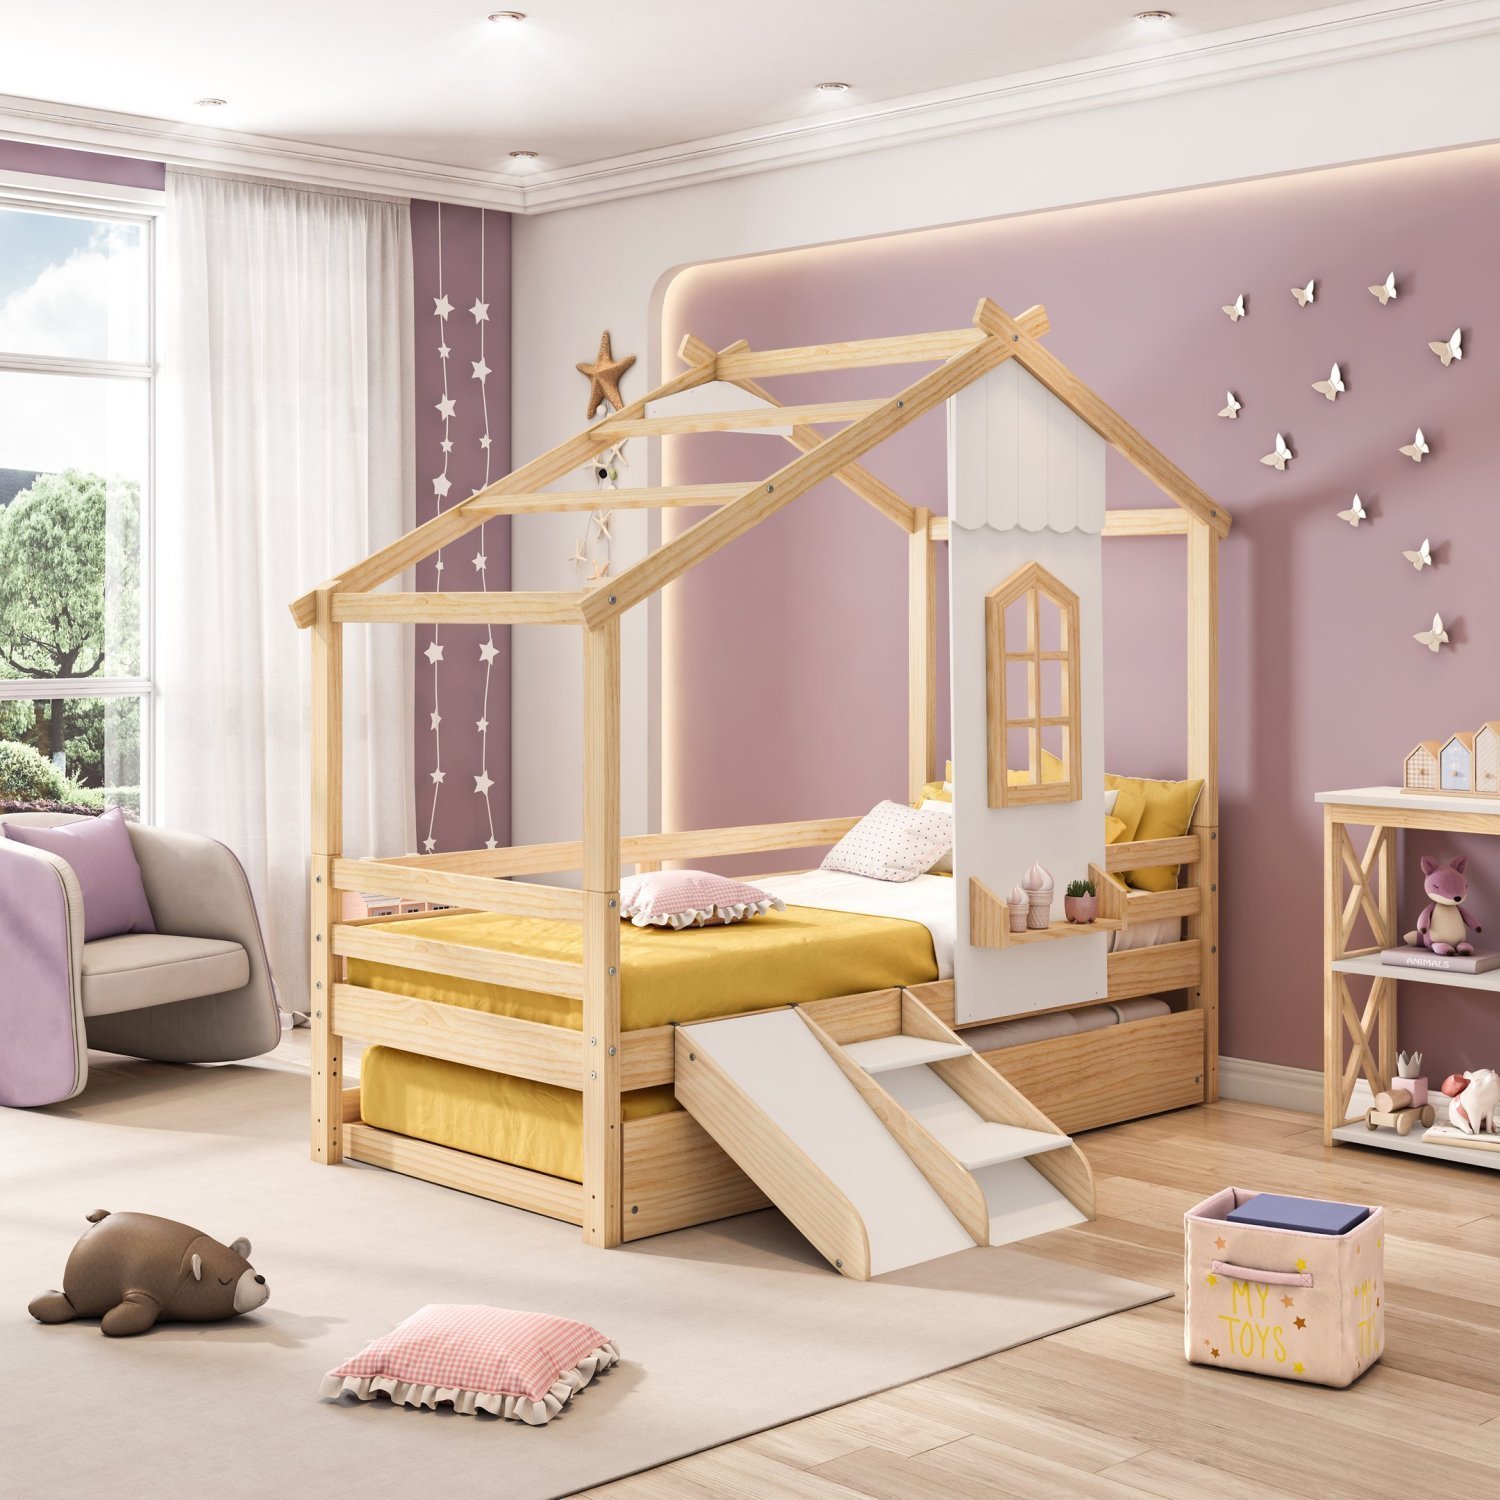 Bicama Infantil Prime House com Mini Escorregador e Telhado V Casatema - 4